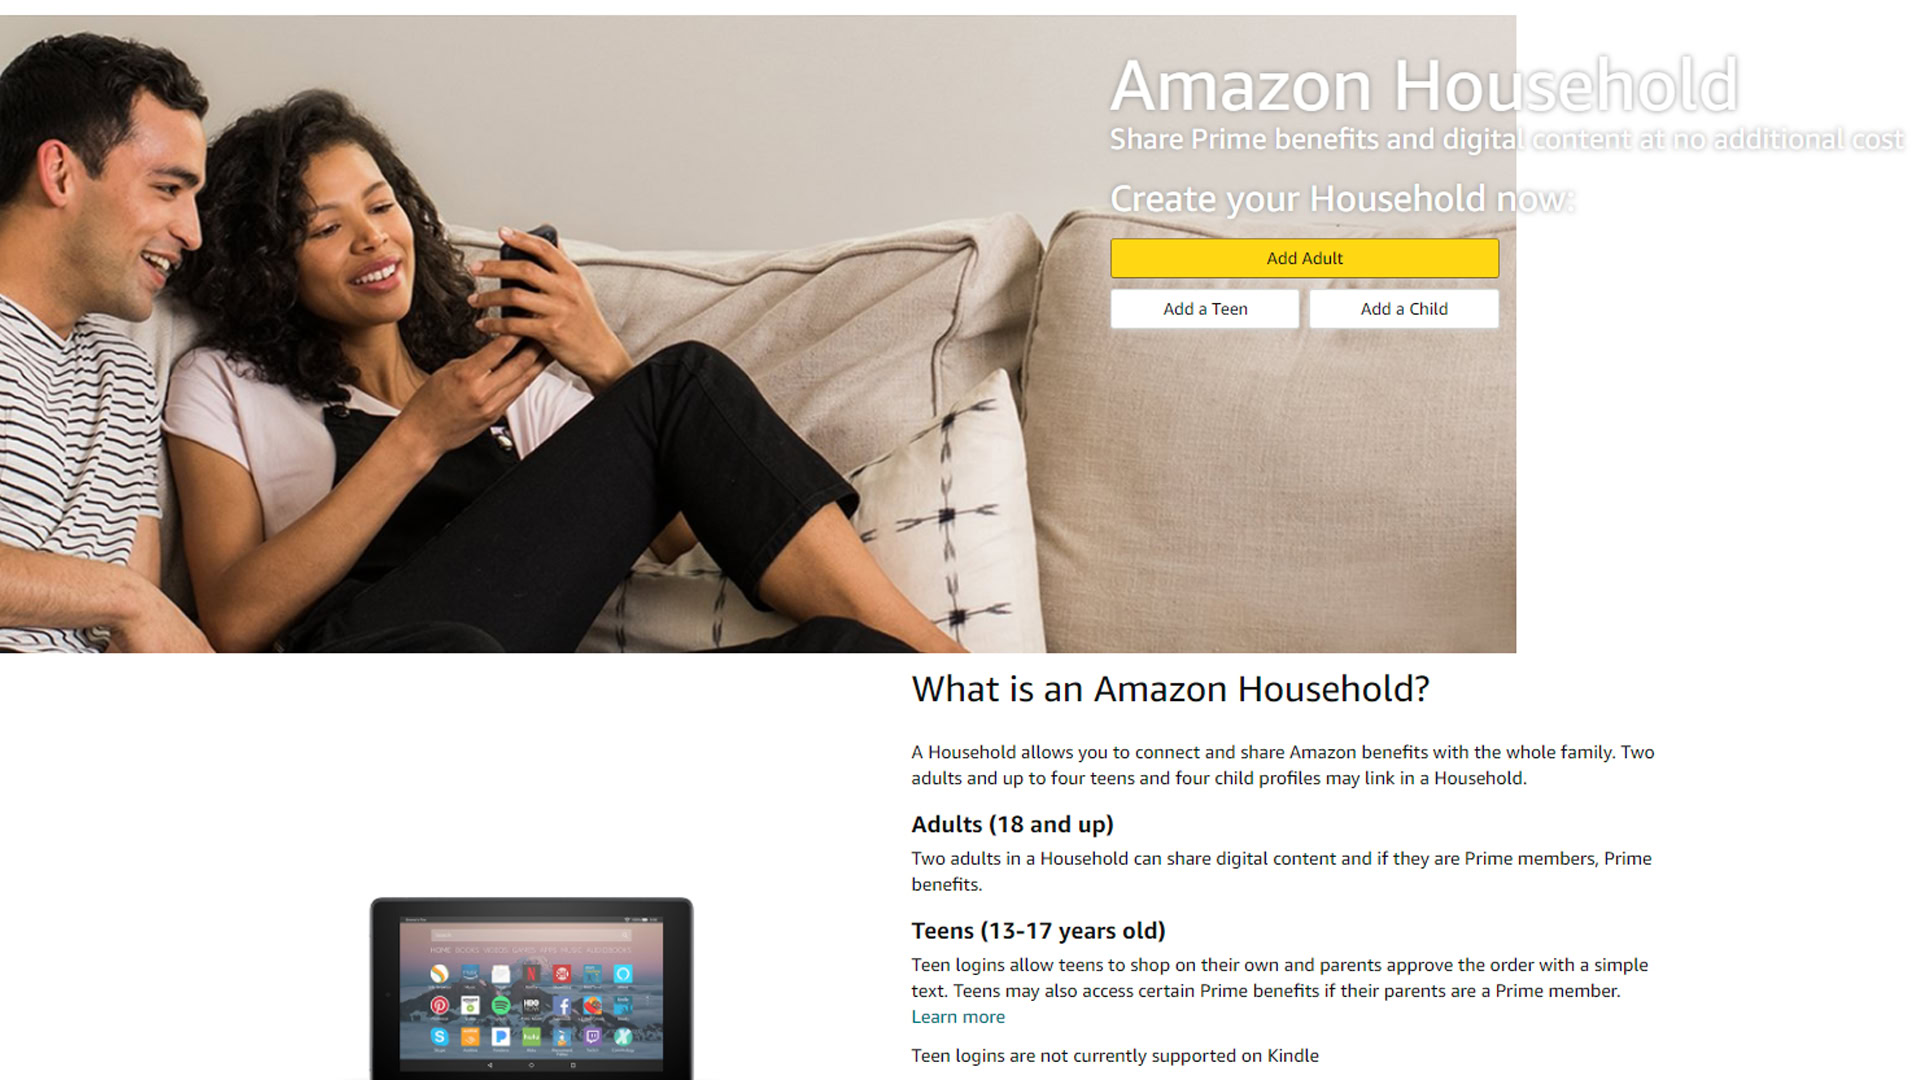 Amazon household website.